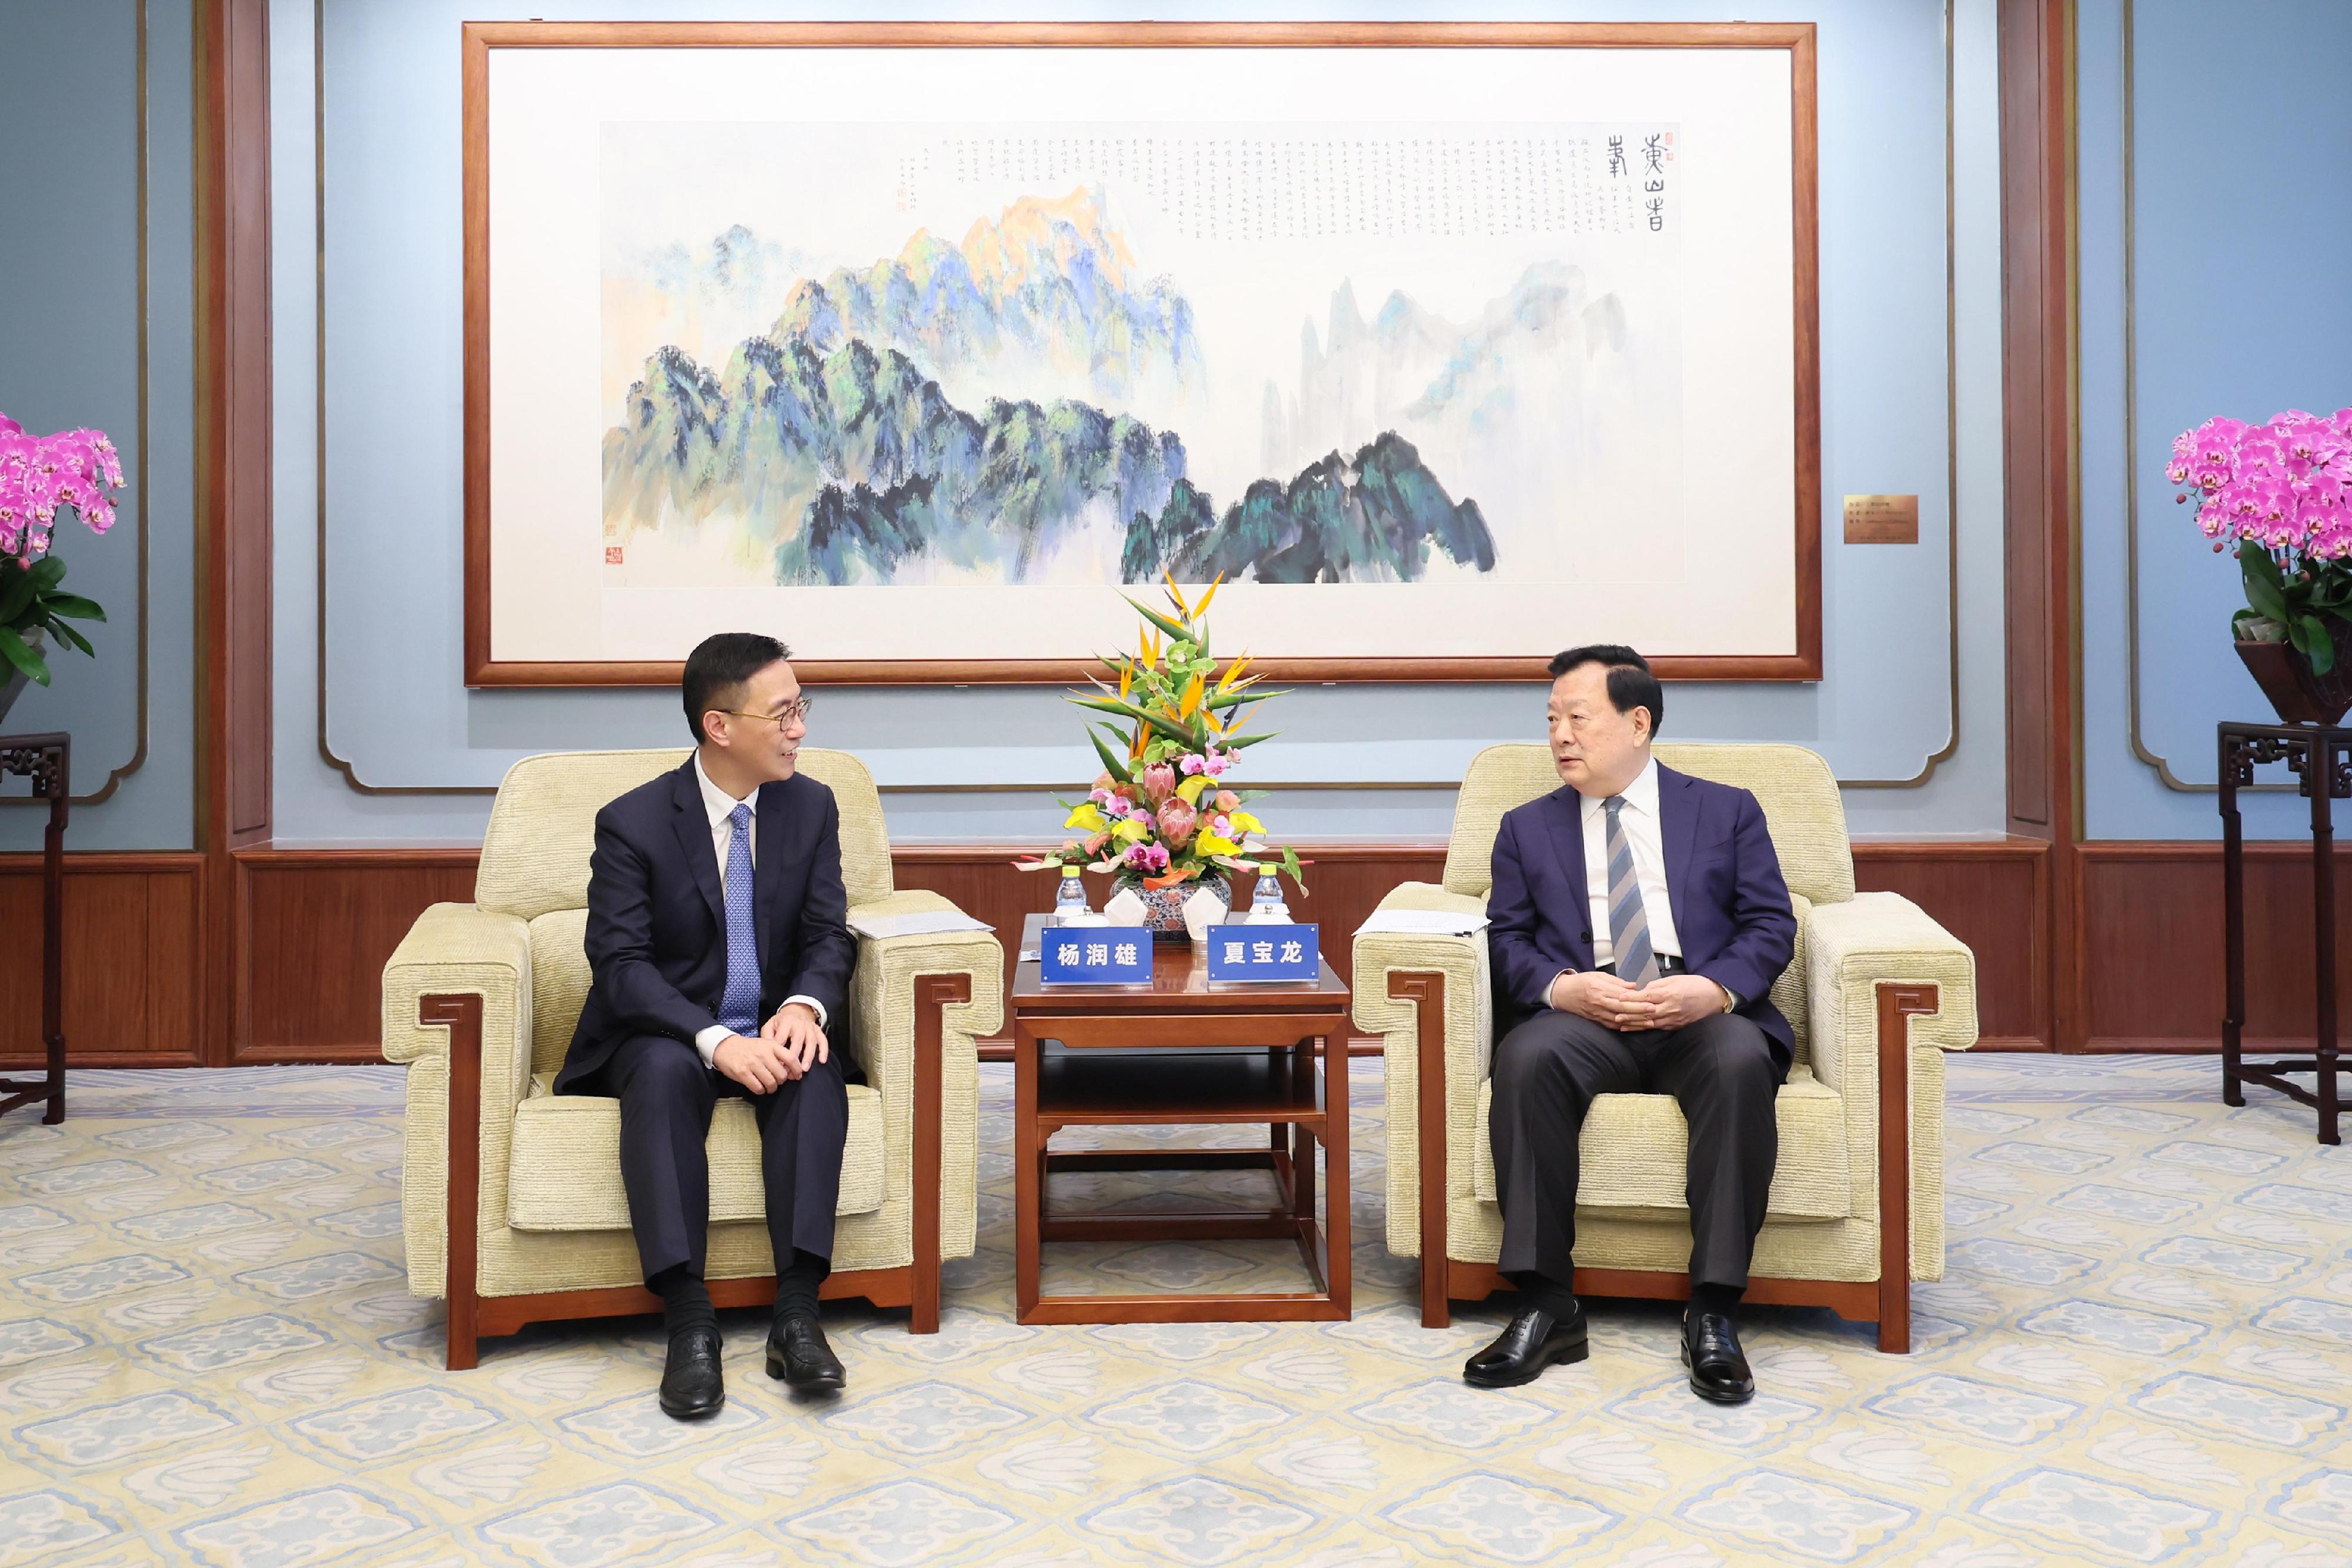 文化體育及旅遊局（文體旅局）局長楊潤雄（左）到訪北京，昨日（五月九日）首先拜會訪國務院港澳事務辦公室主任夏寶龍（右），介紹文體旅局的最新工作情況。

